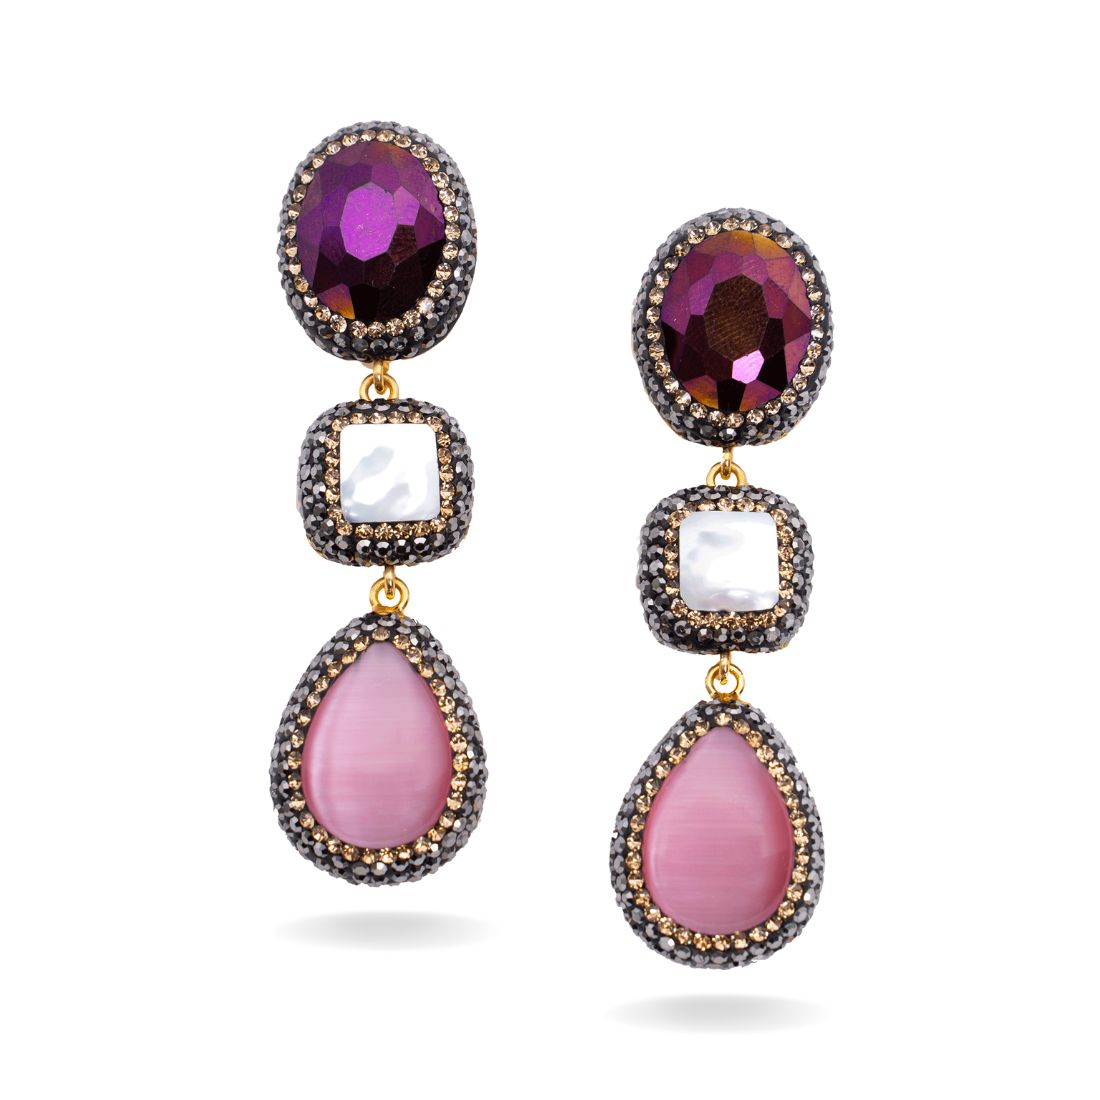 Triple Gemstone Drop Earrings in purple and pink